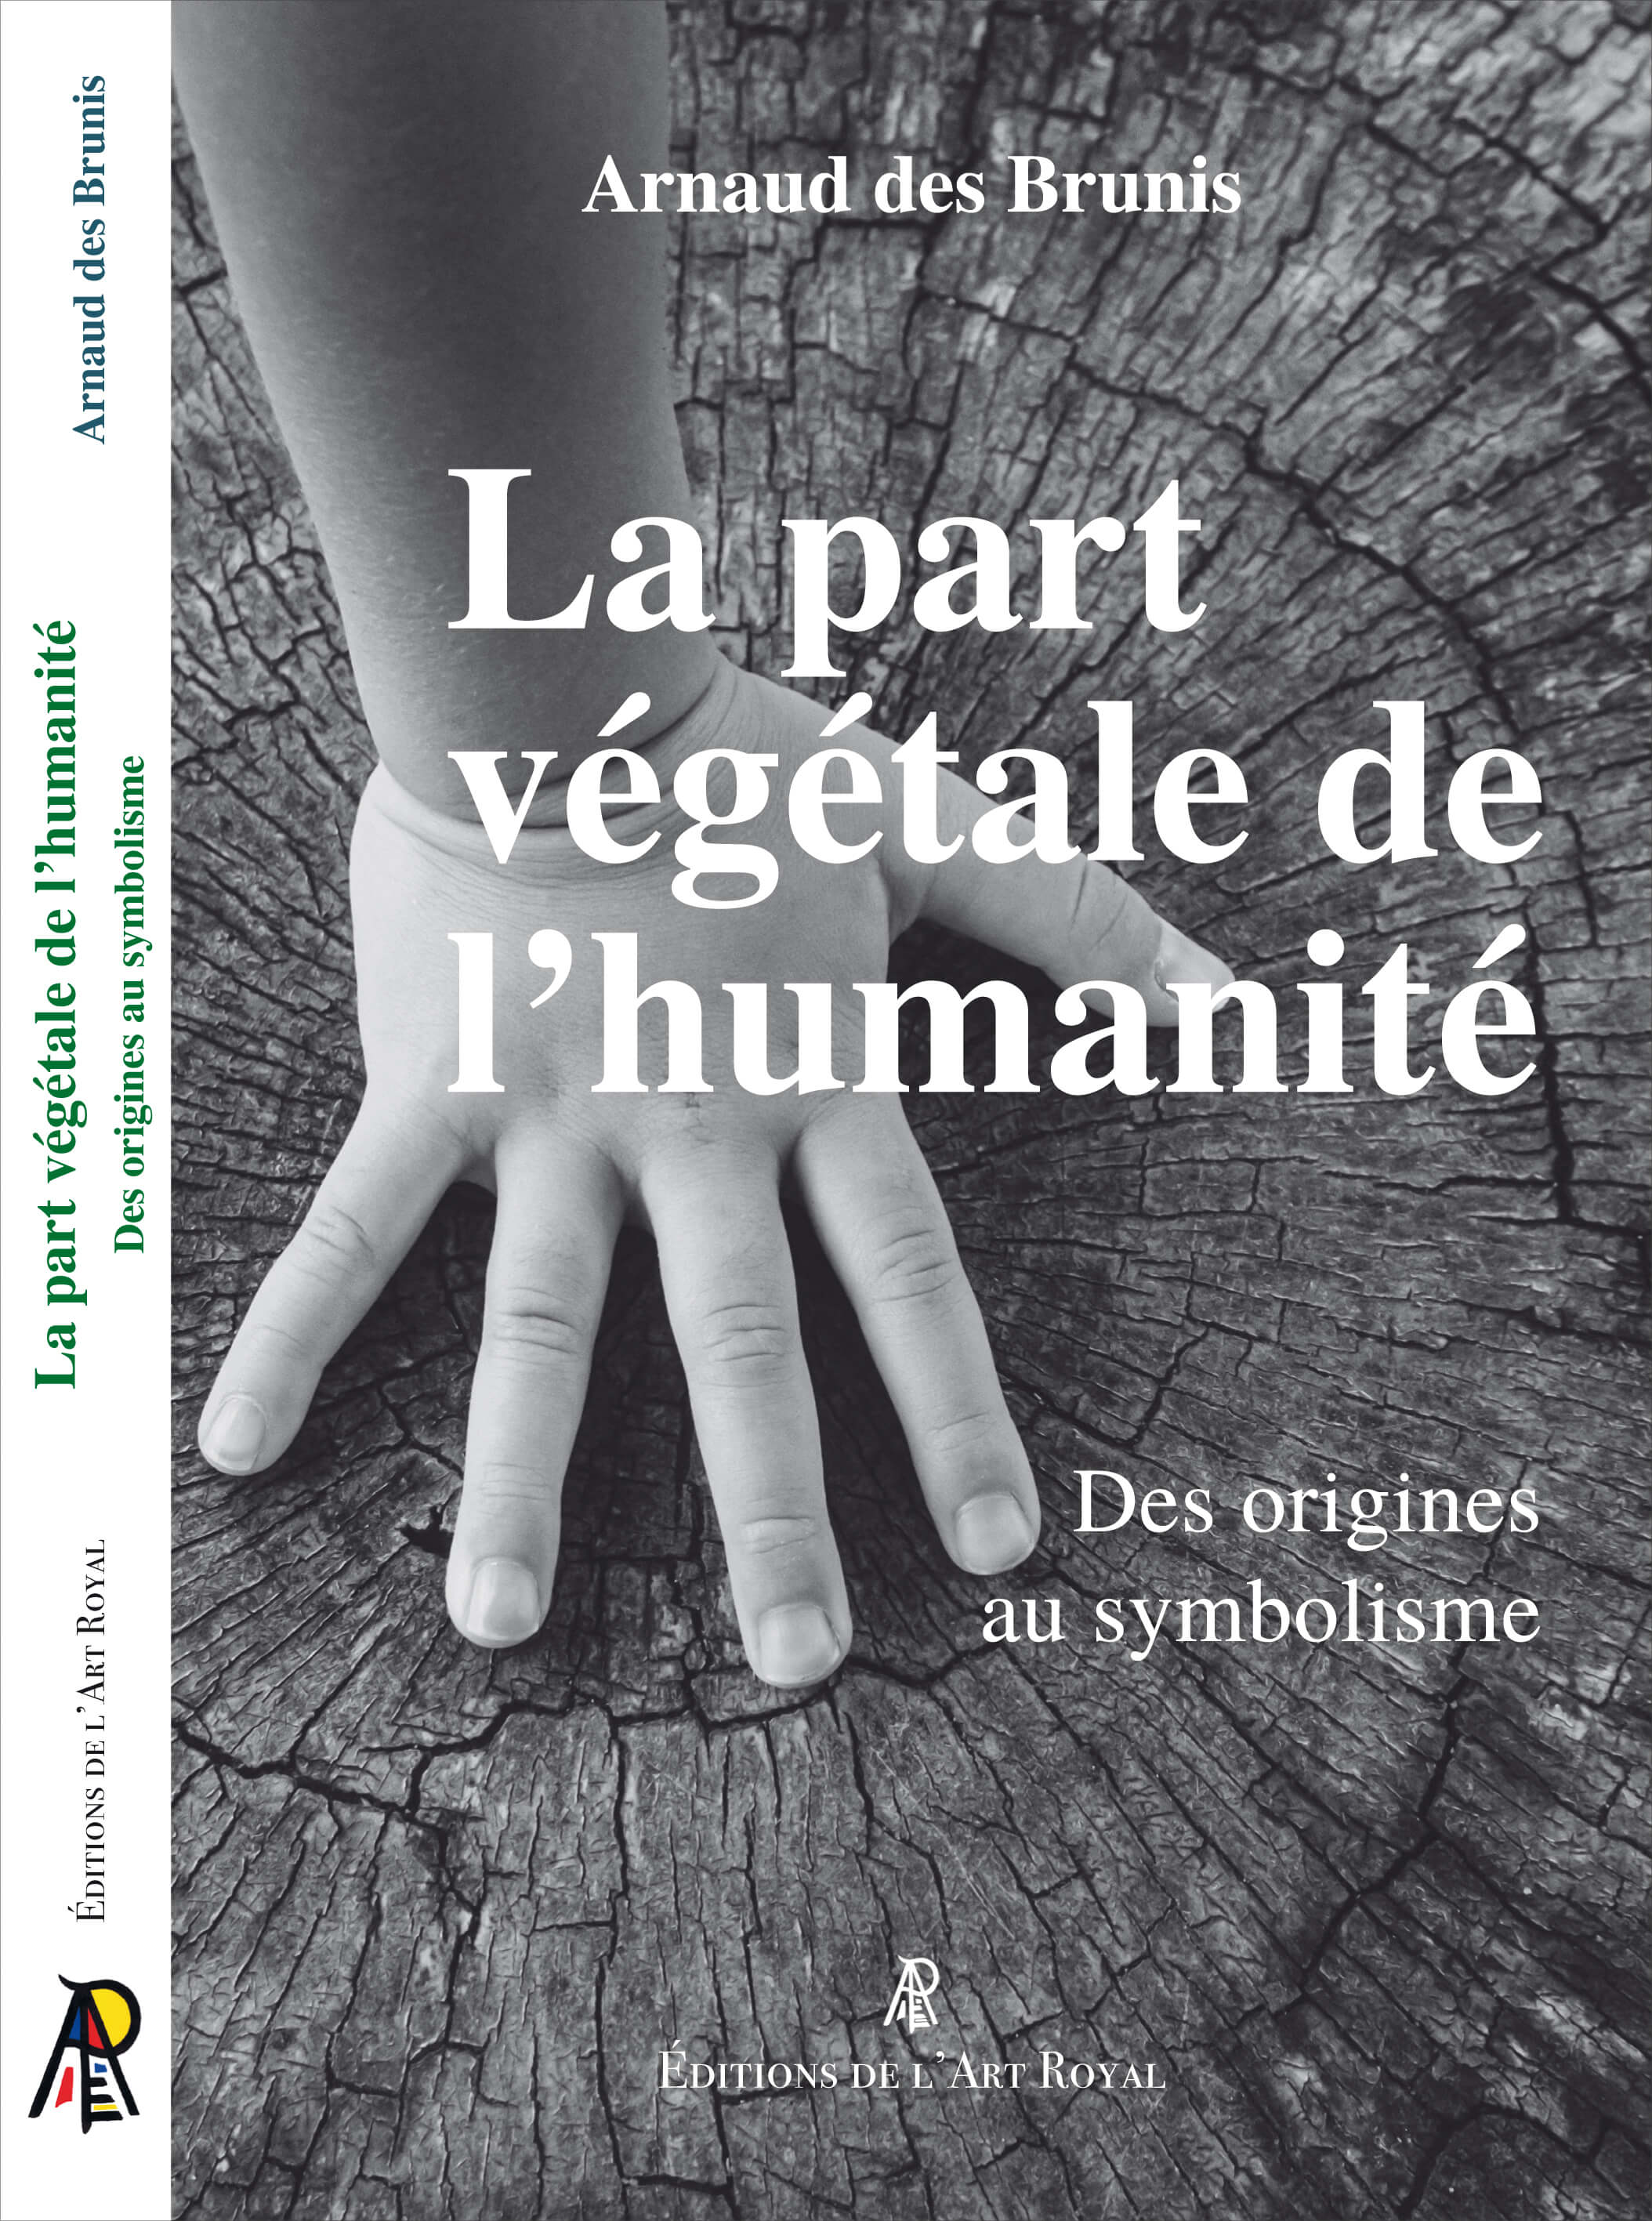 La part végétale de l’humanité - Des origines au symbolisme, Arnaud des Brunis